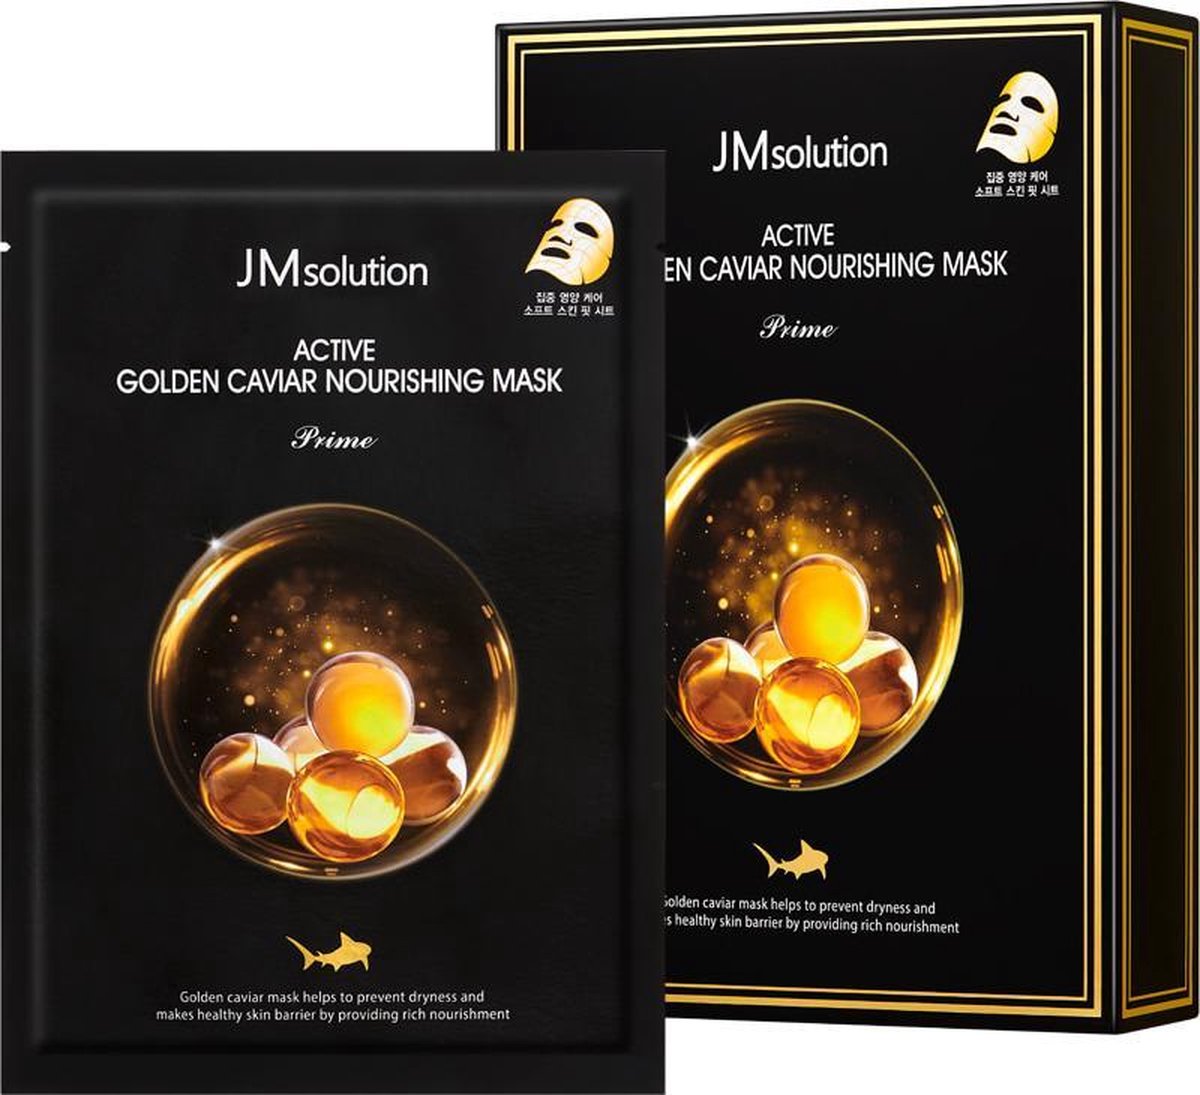 JM solution Active Golden Caviar Nourishing Mask Prime 3pcs - Korean Skincare